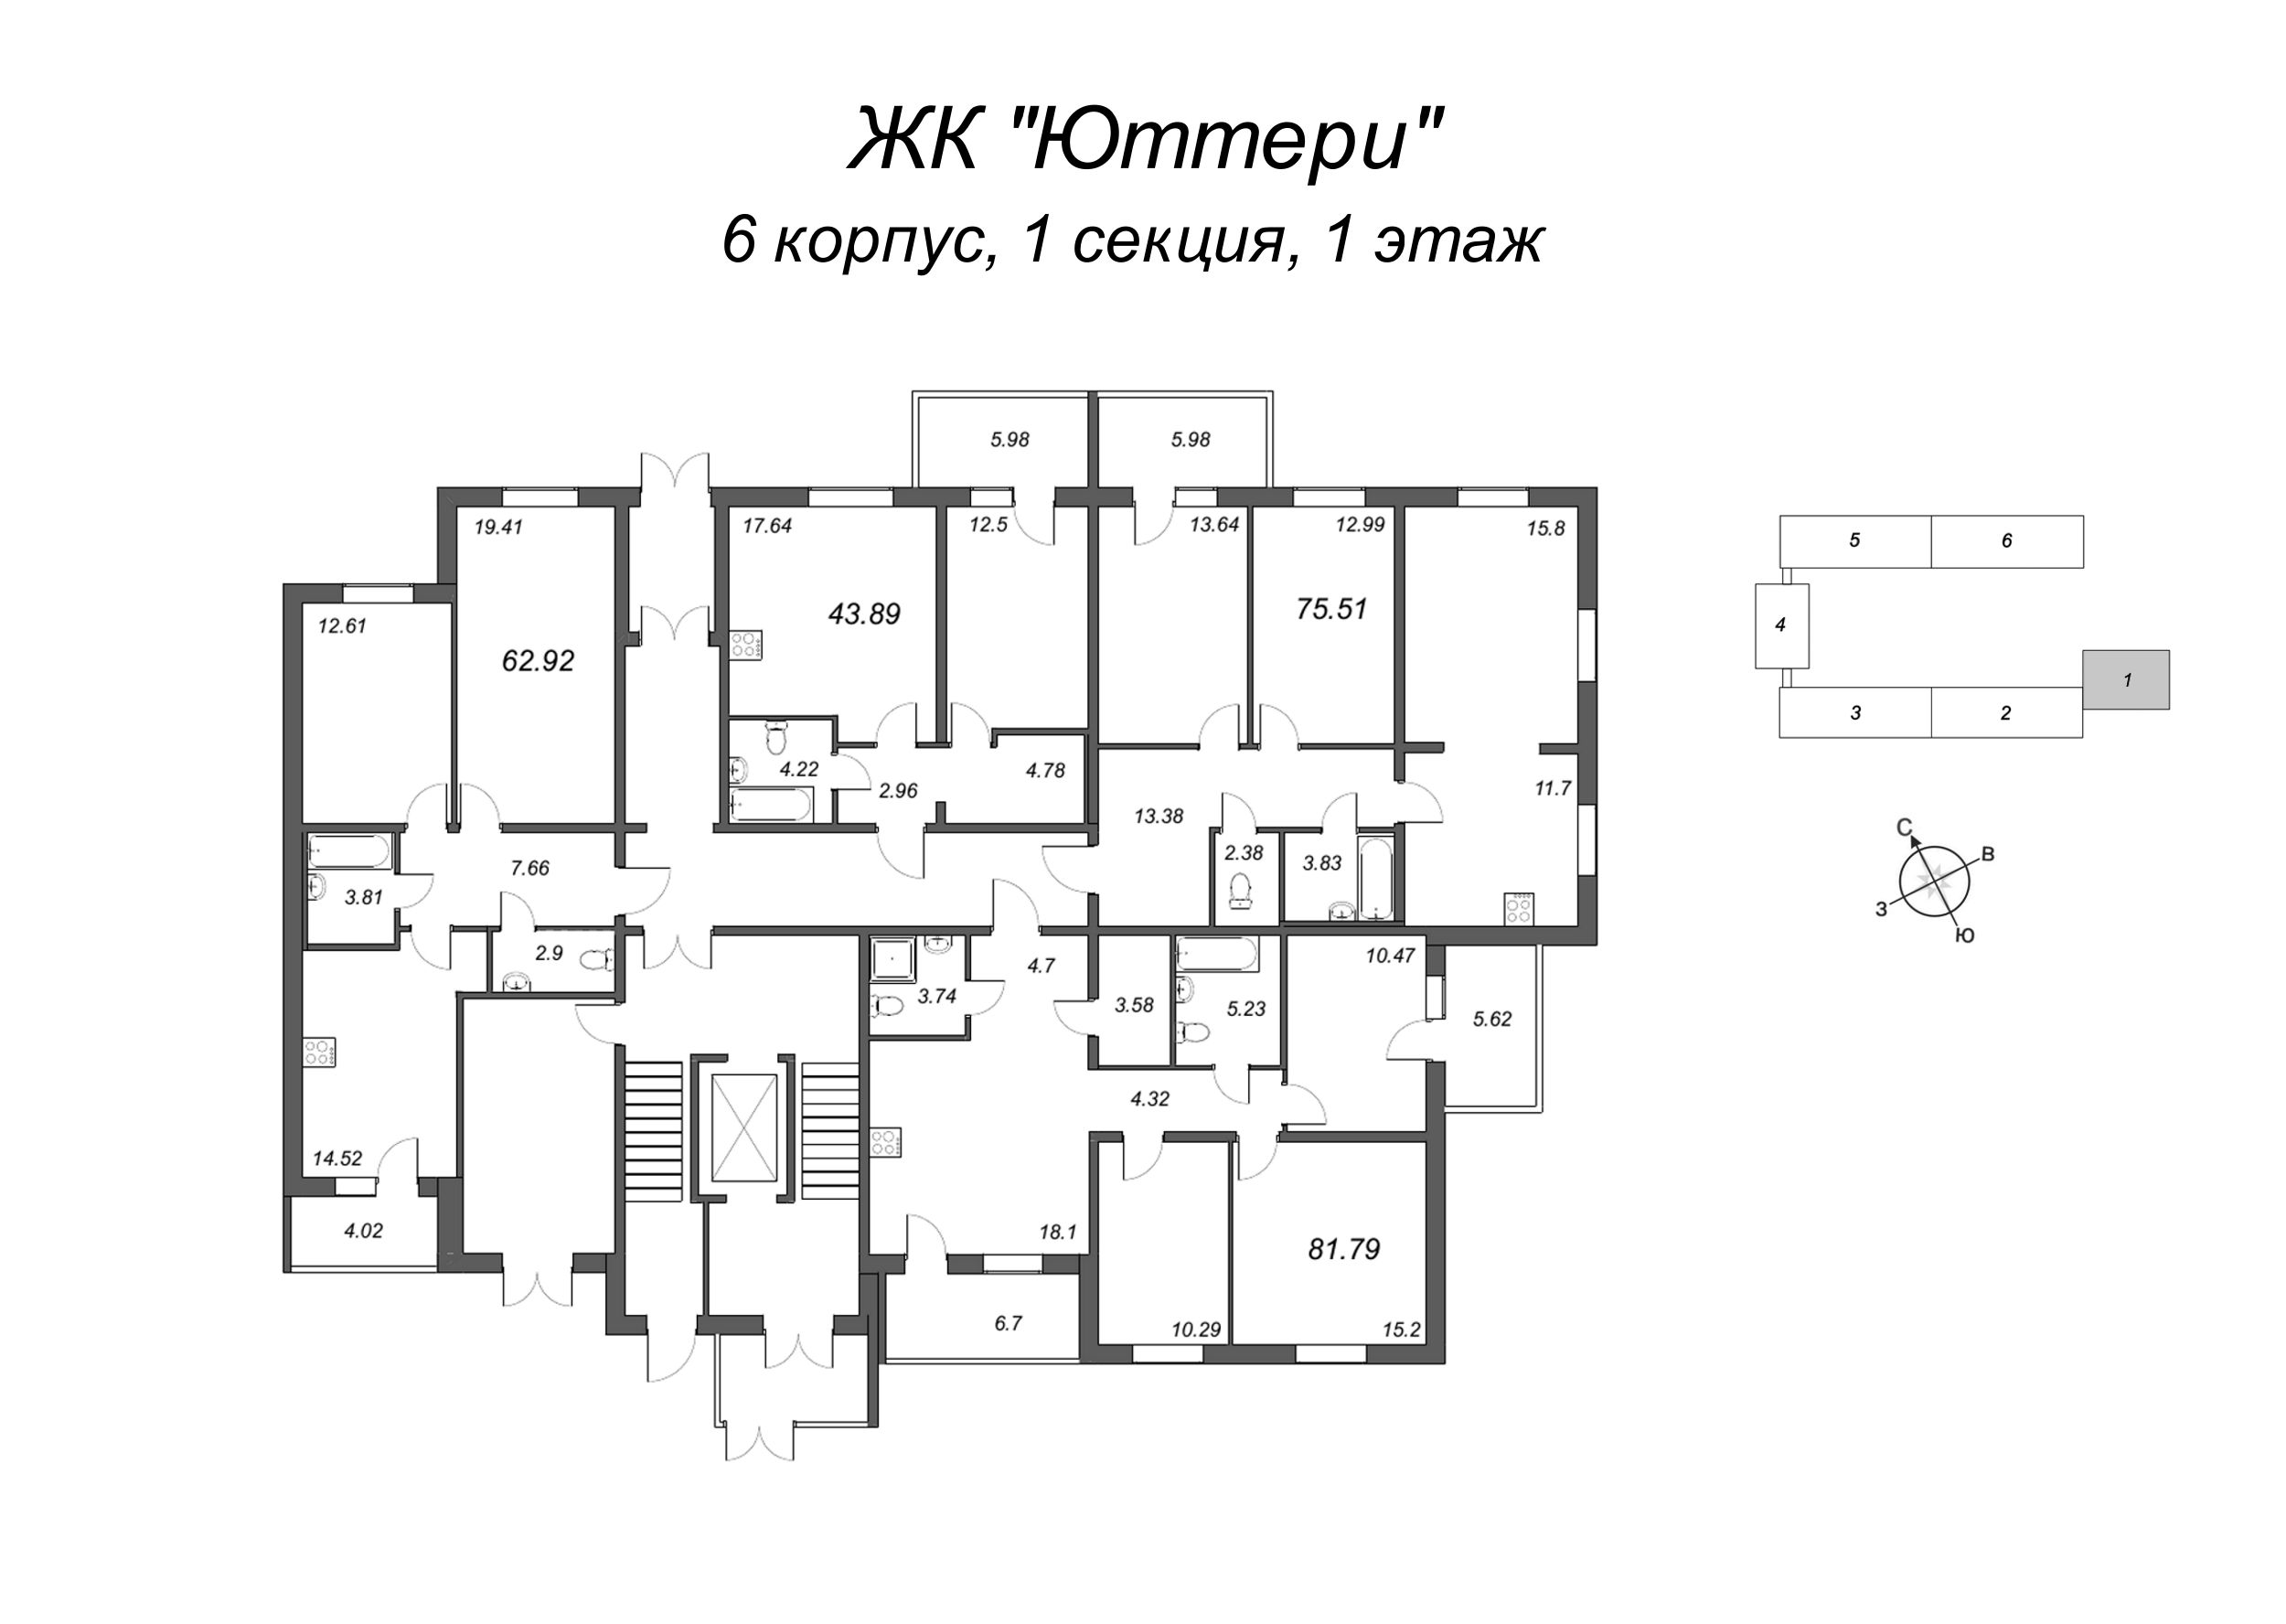 3-комнатная (Евро) квартира, 73.72 м² в ЖК "Юттери" - планировка этажа